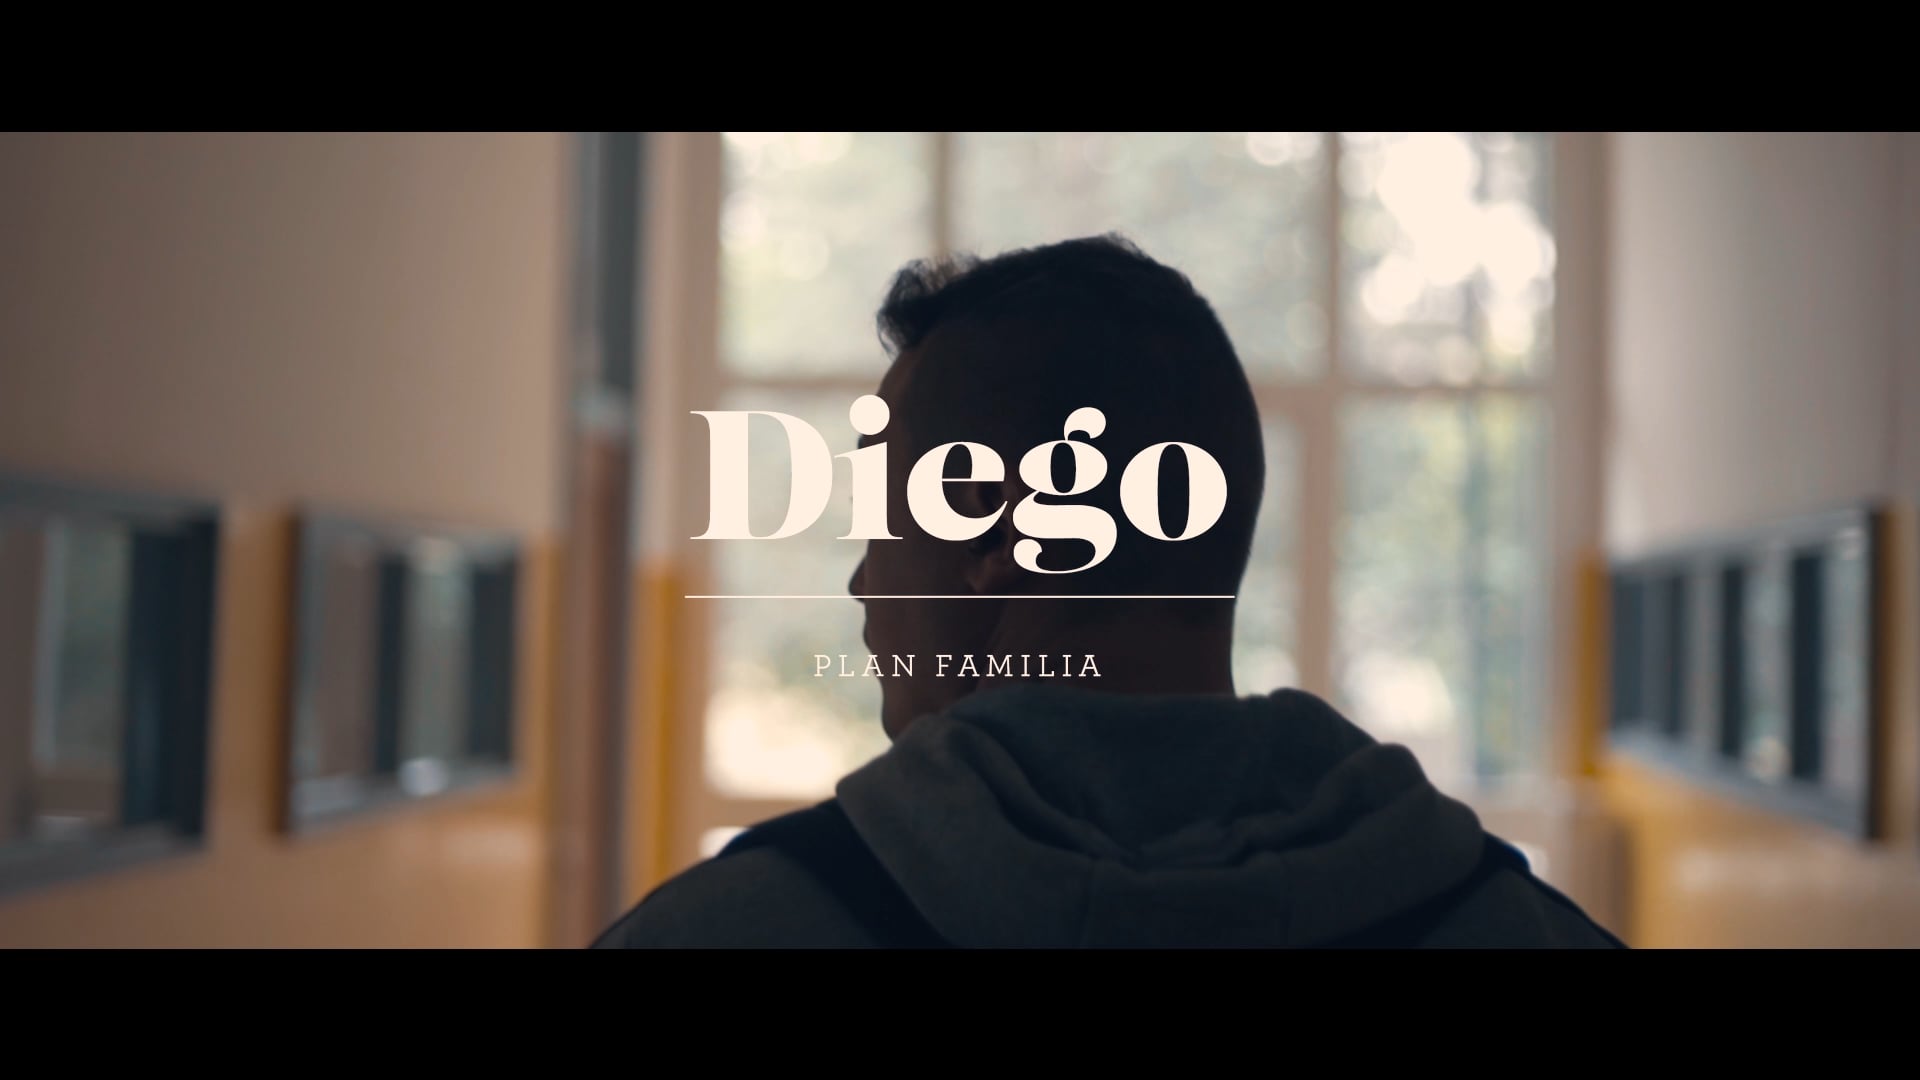 Adecco Plan Familia - Diego